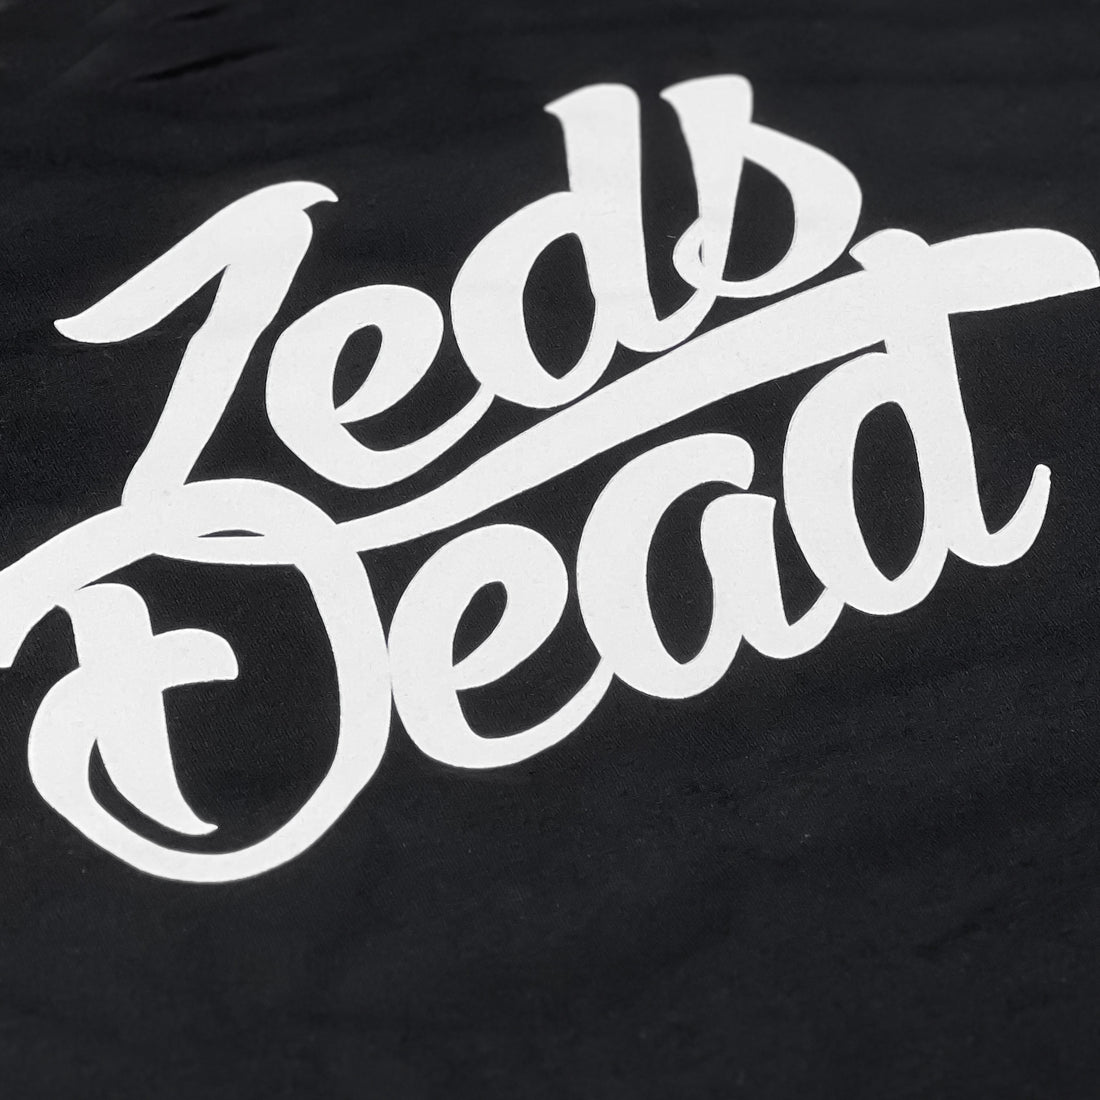 Zeds Dead - Z's Up - Black Hoodie